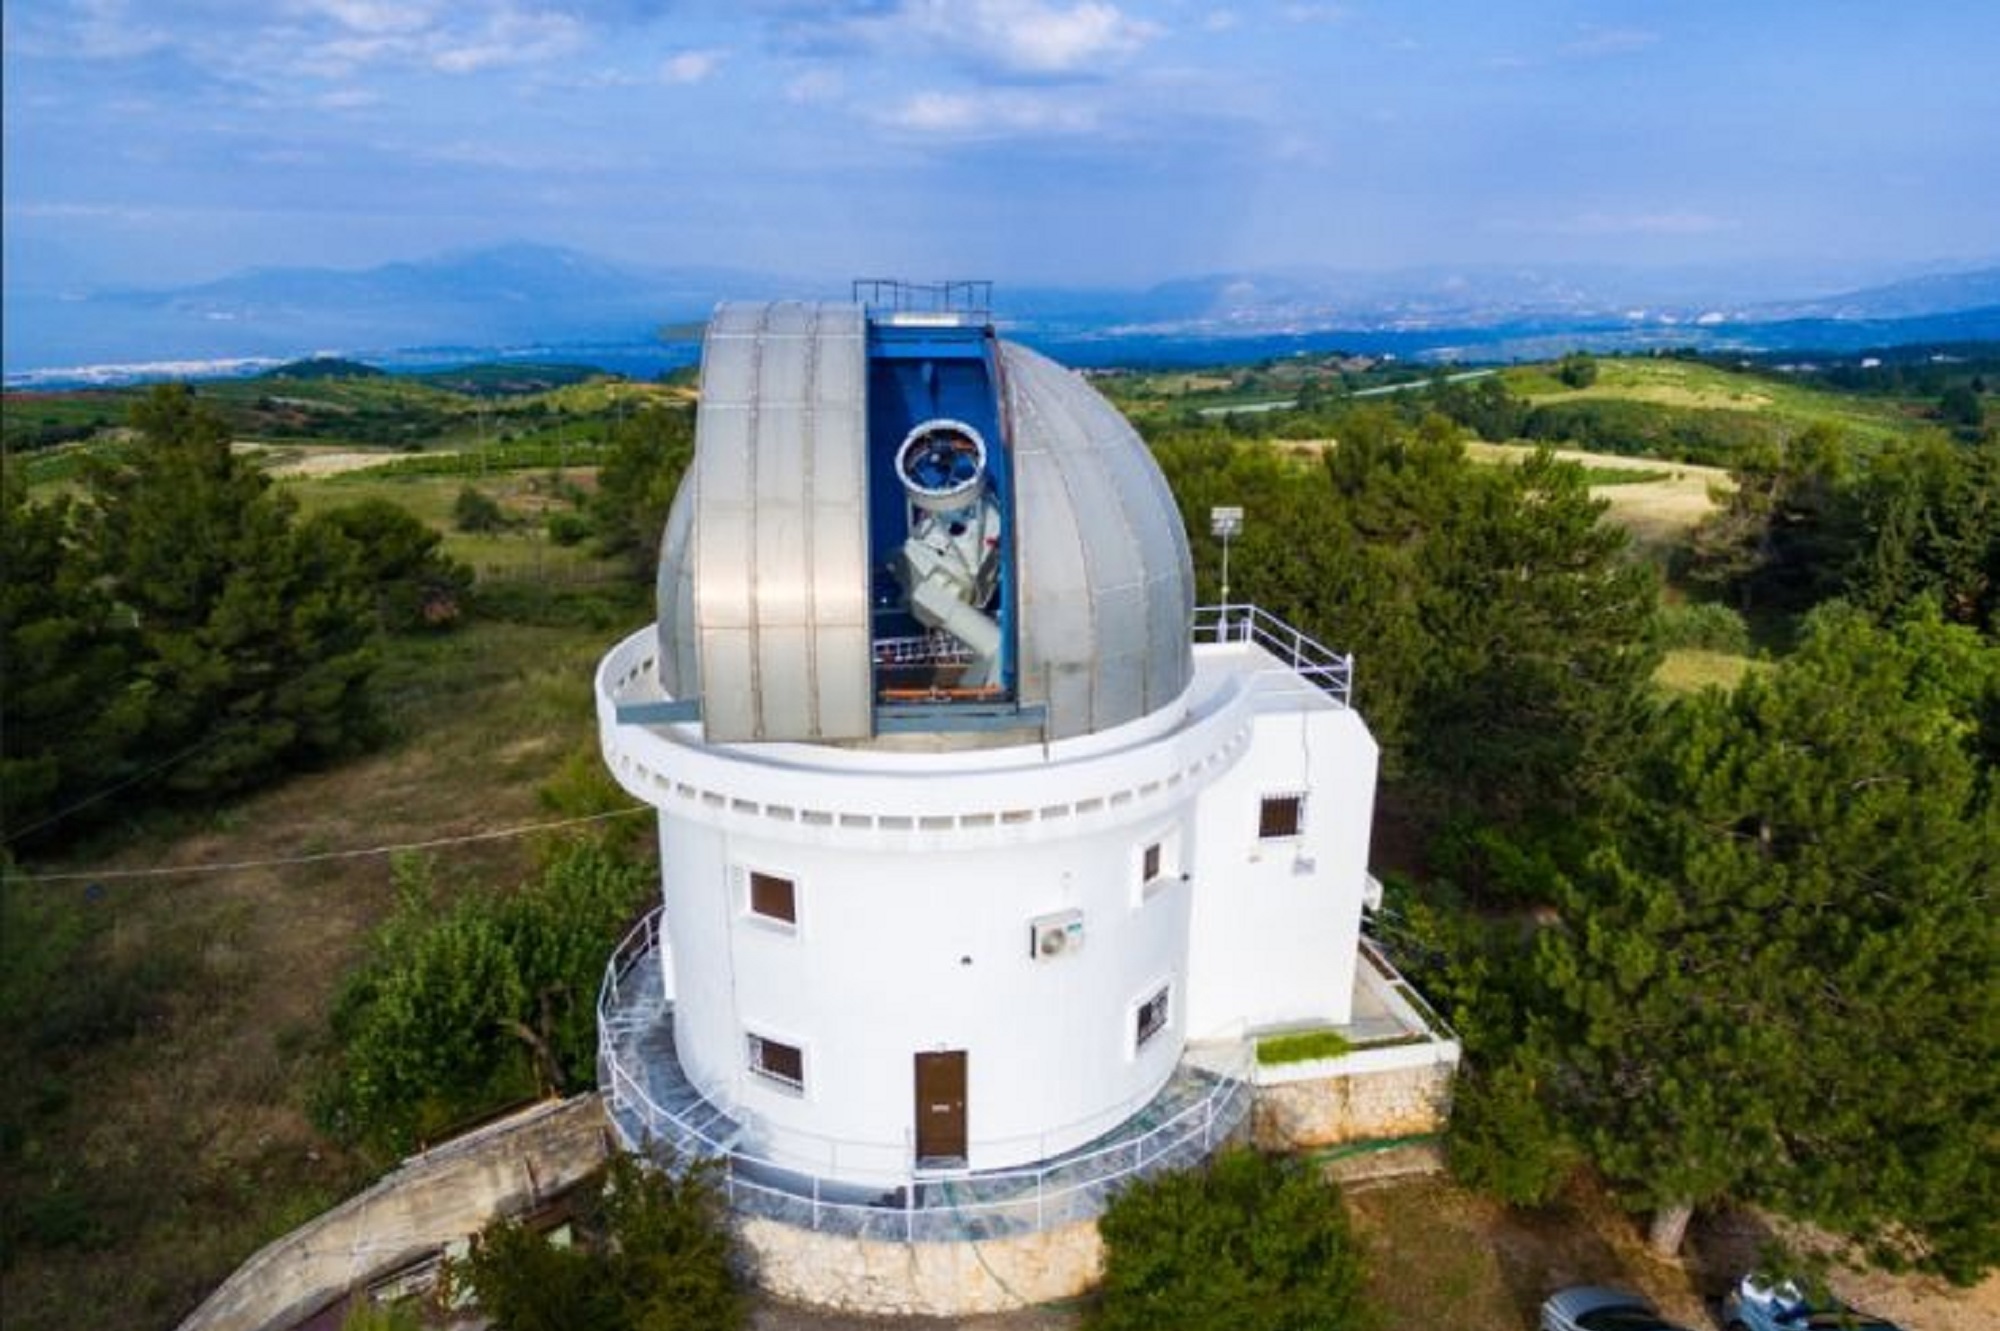 Αστεροσκοπείο Κρυονερίου: Στόχος να γίνει ο μεγαλύτερος διαστημικός κόμβος στη ΝΑ Ευρώπη